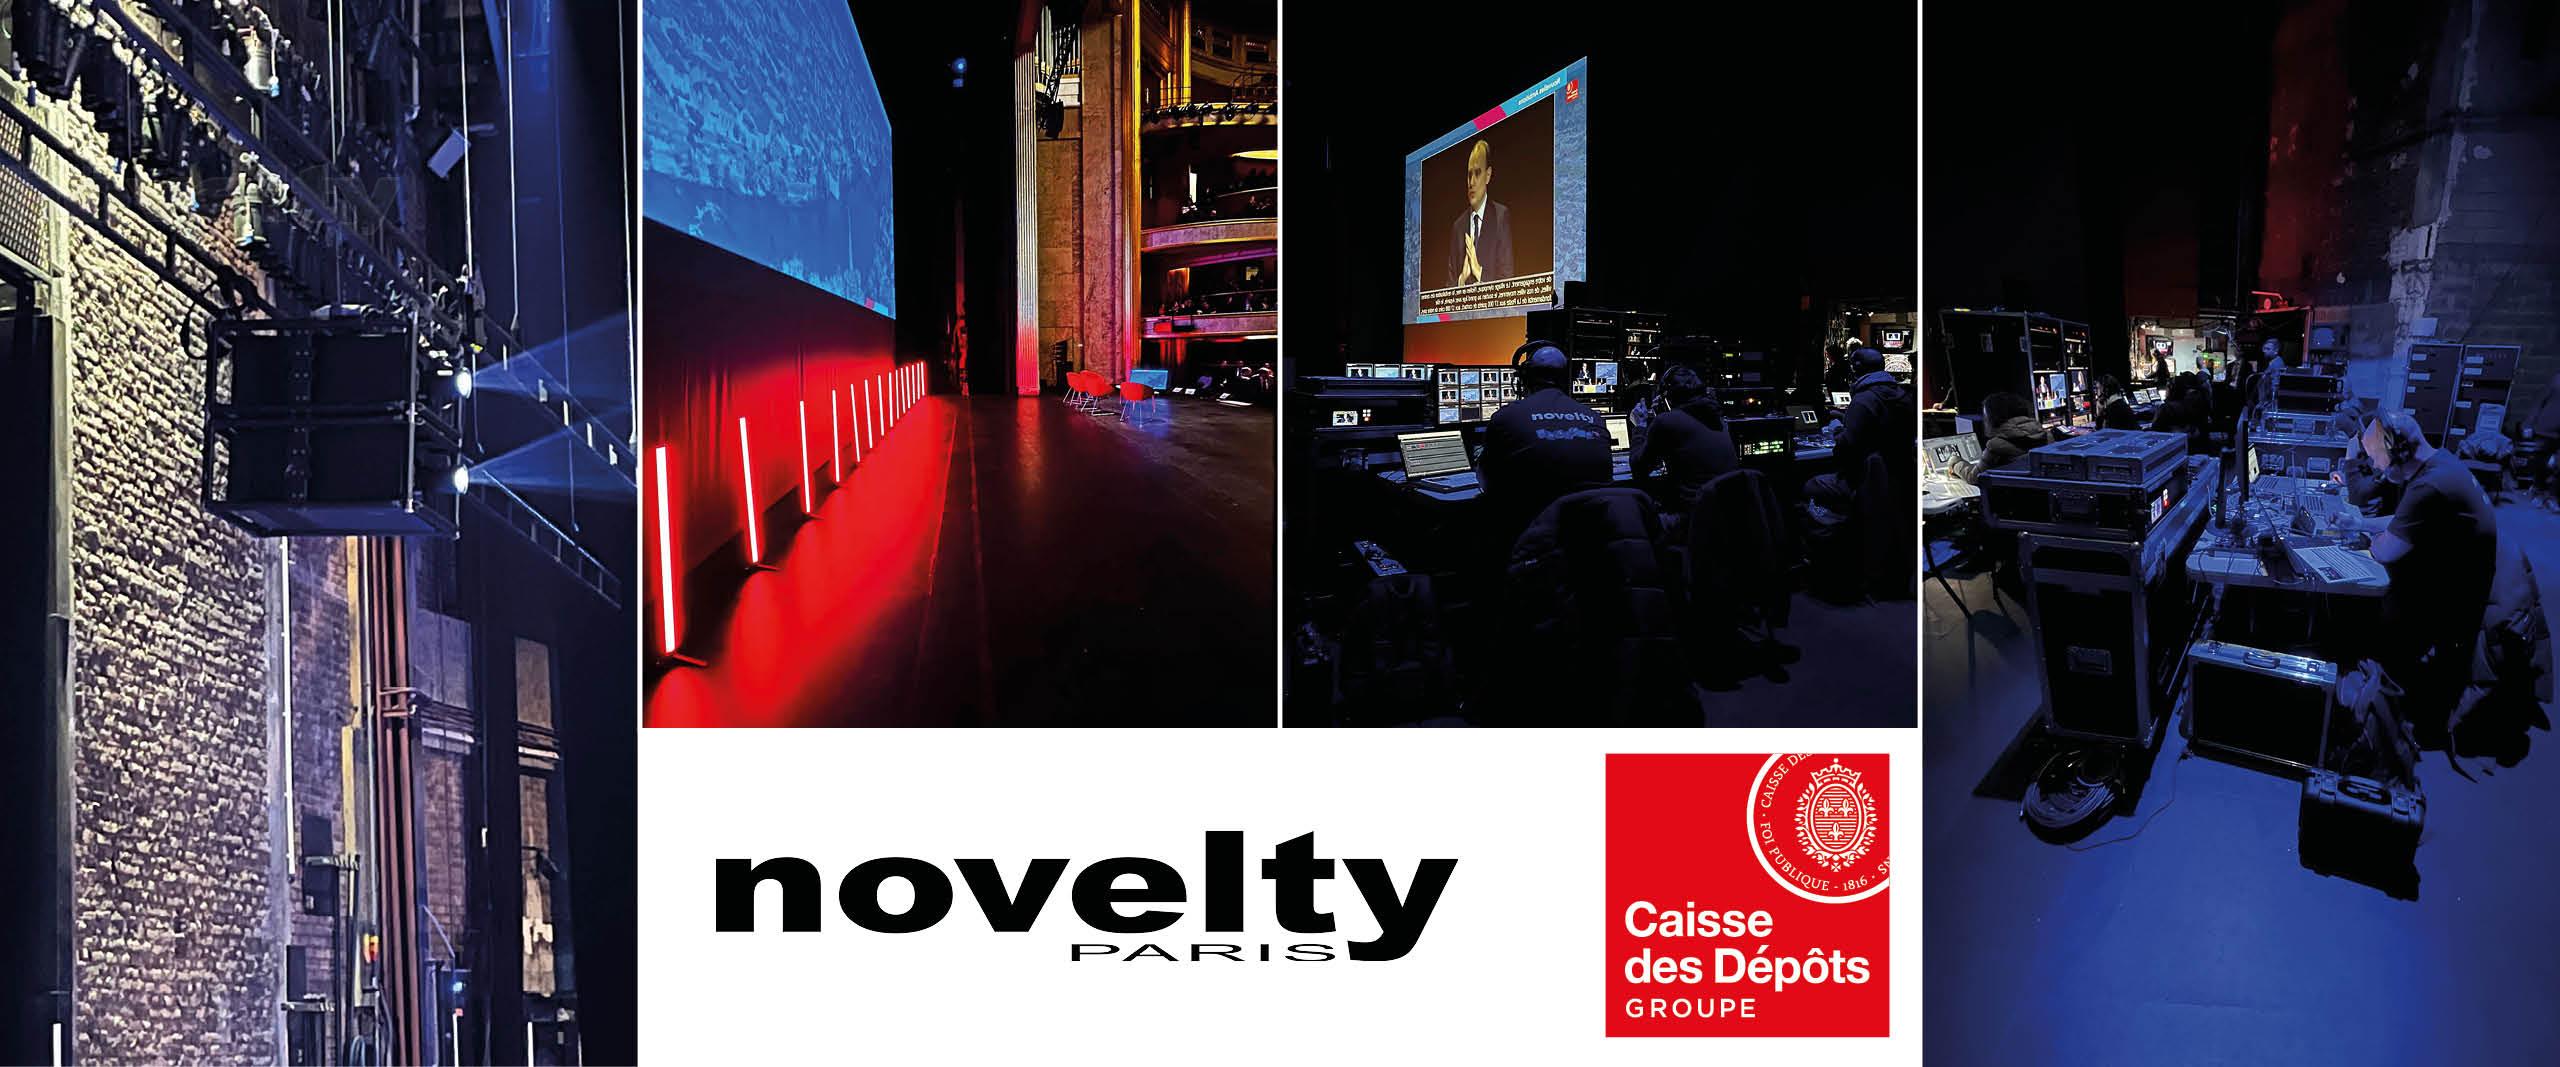 Visuel Novelty Paris au Théâtre des Champs Élysées pour la Caisse des Dépôts